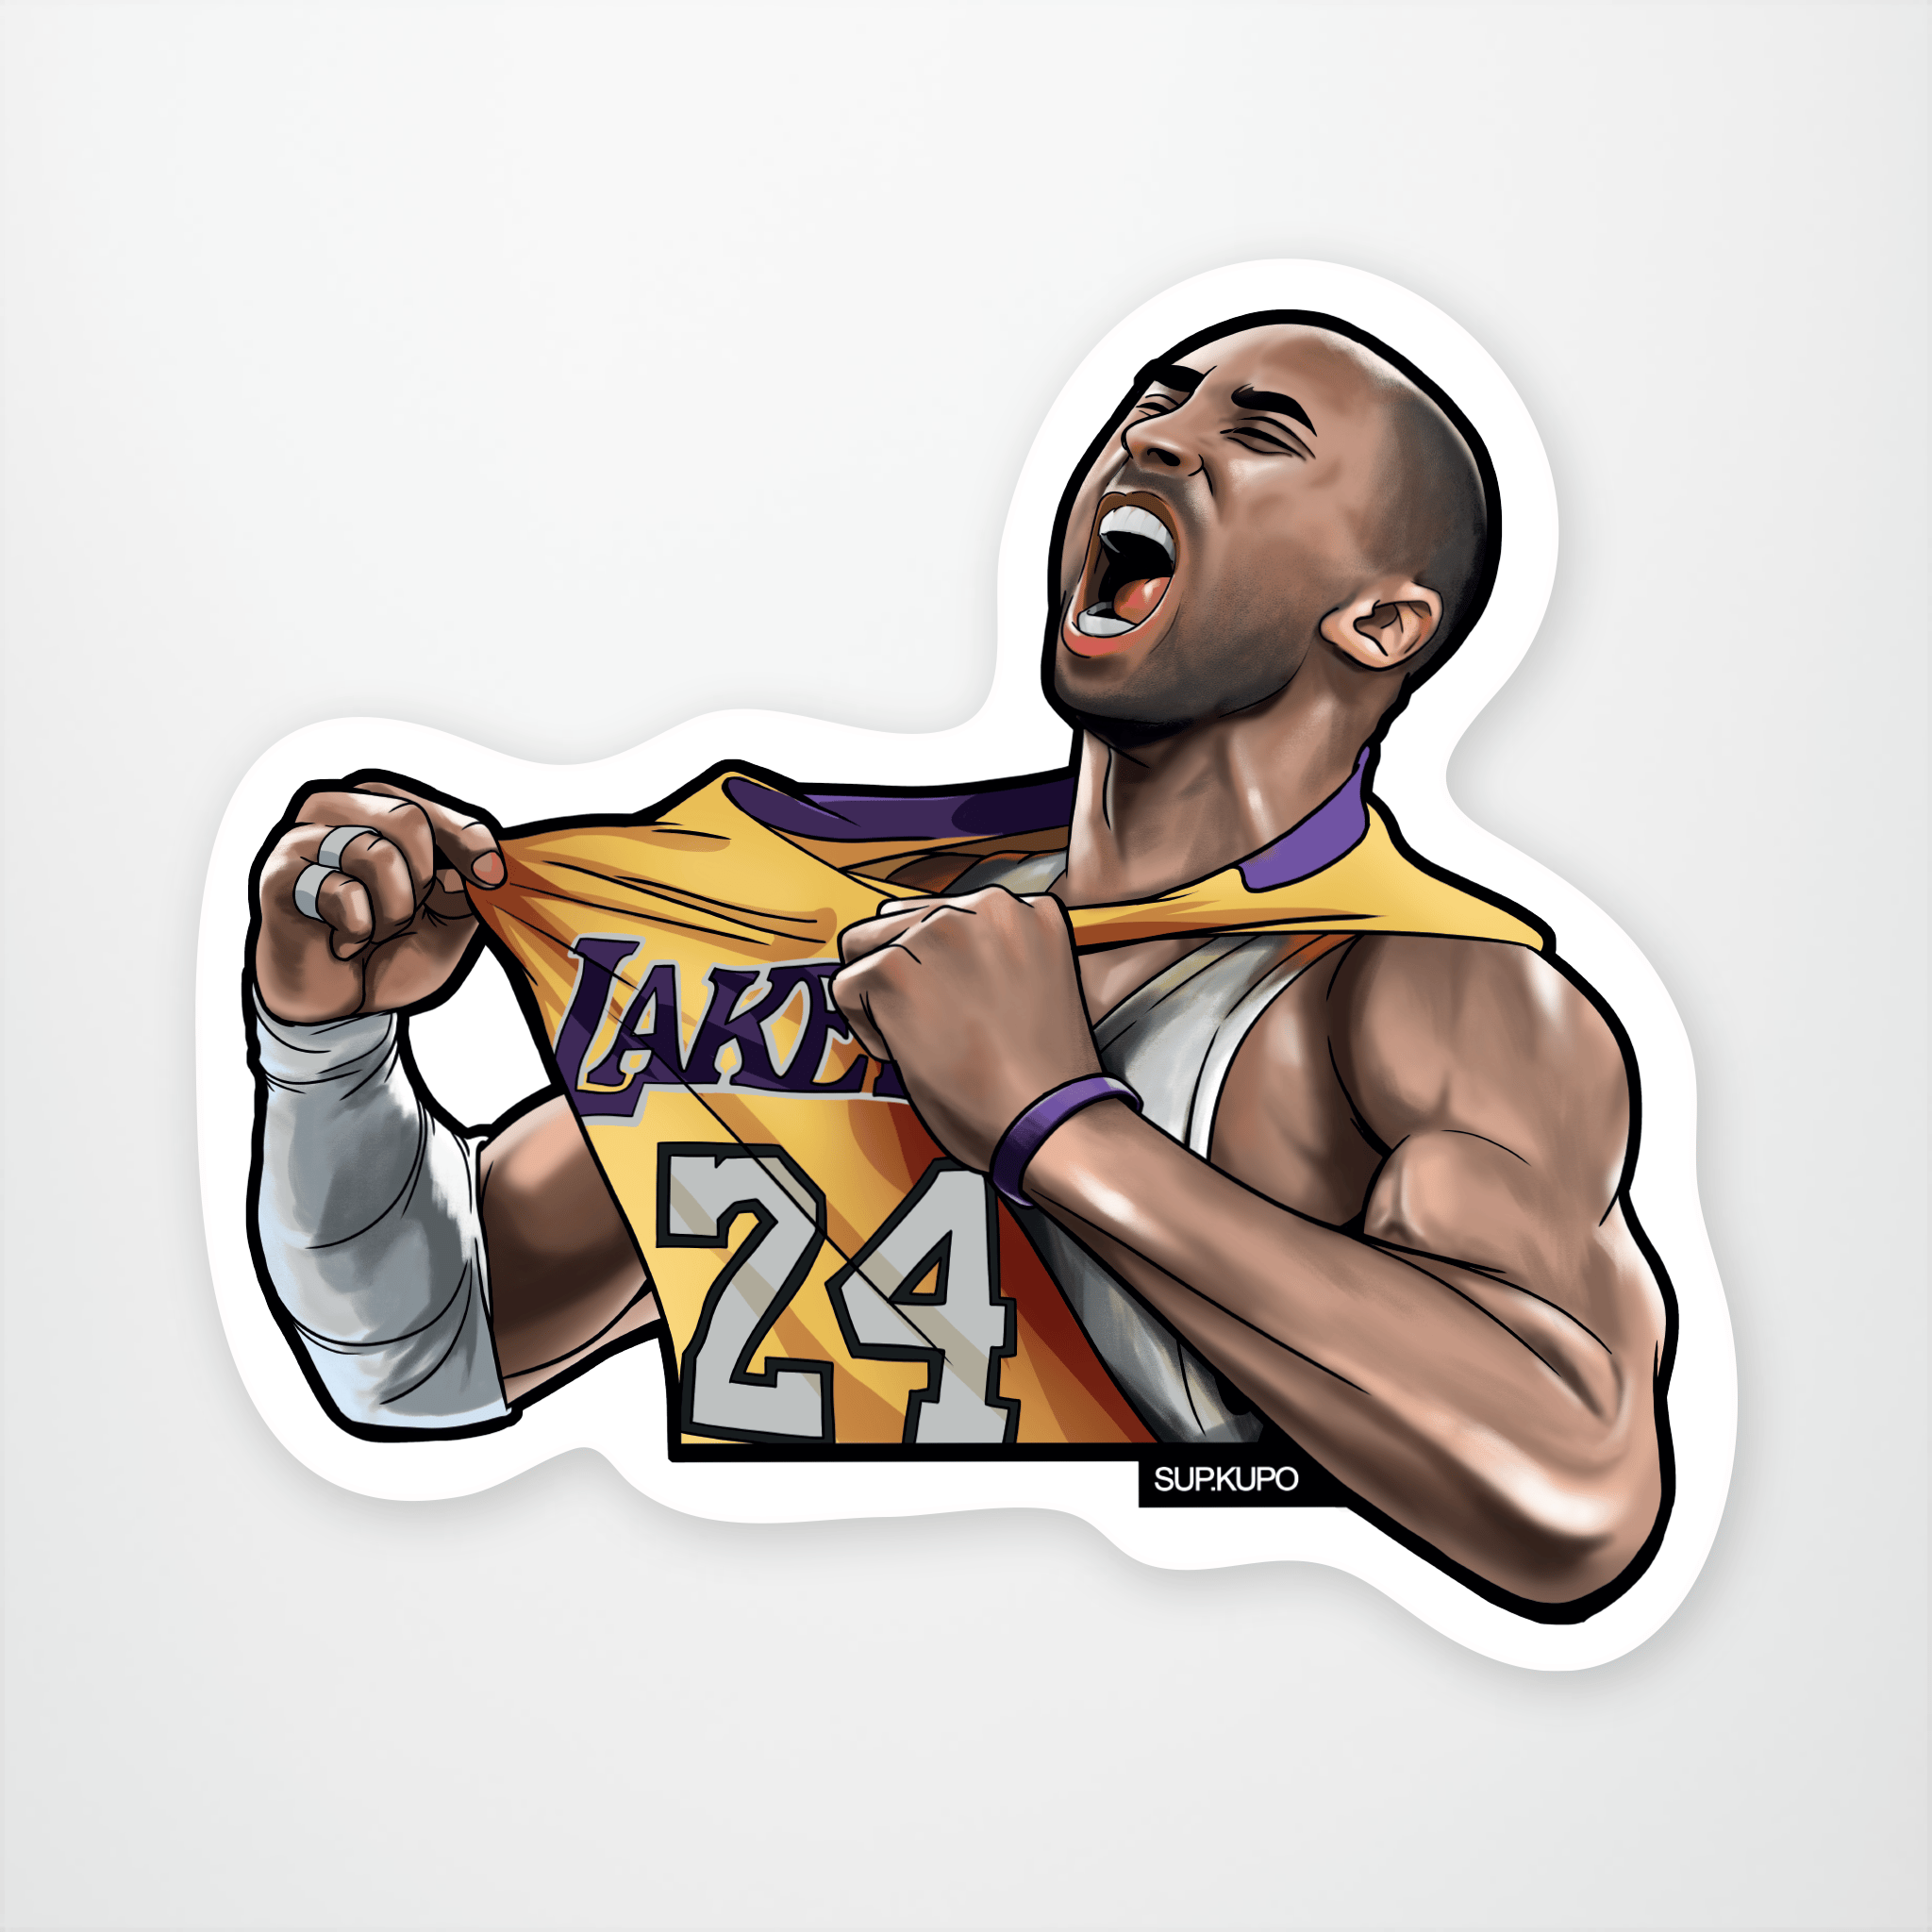 Kobe Bryant By bebetokaspi, Sports Cartoon